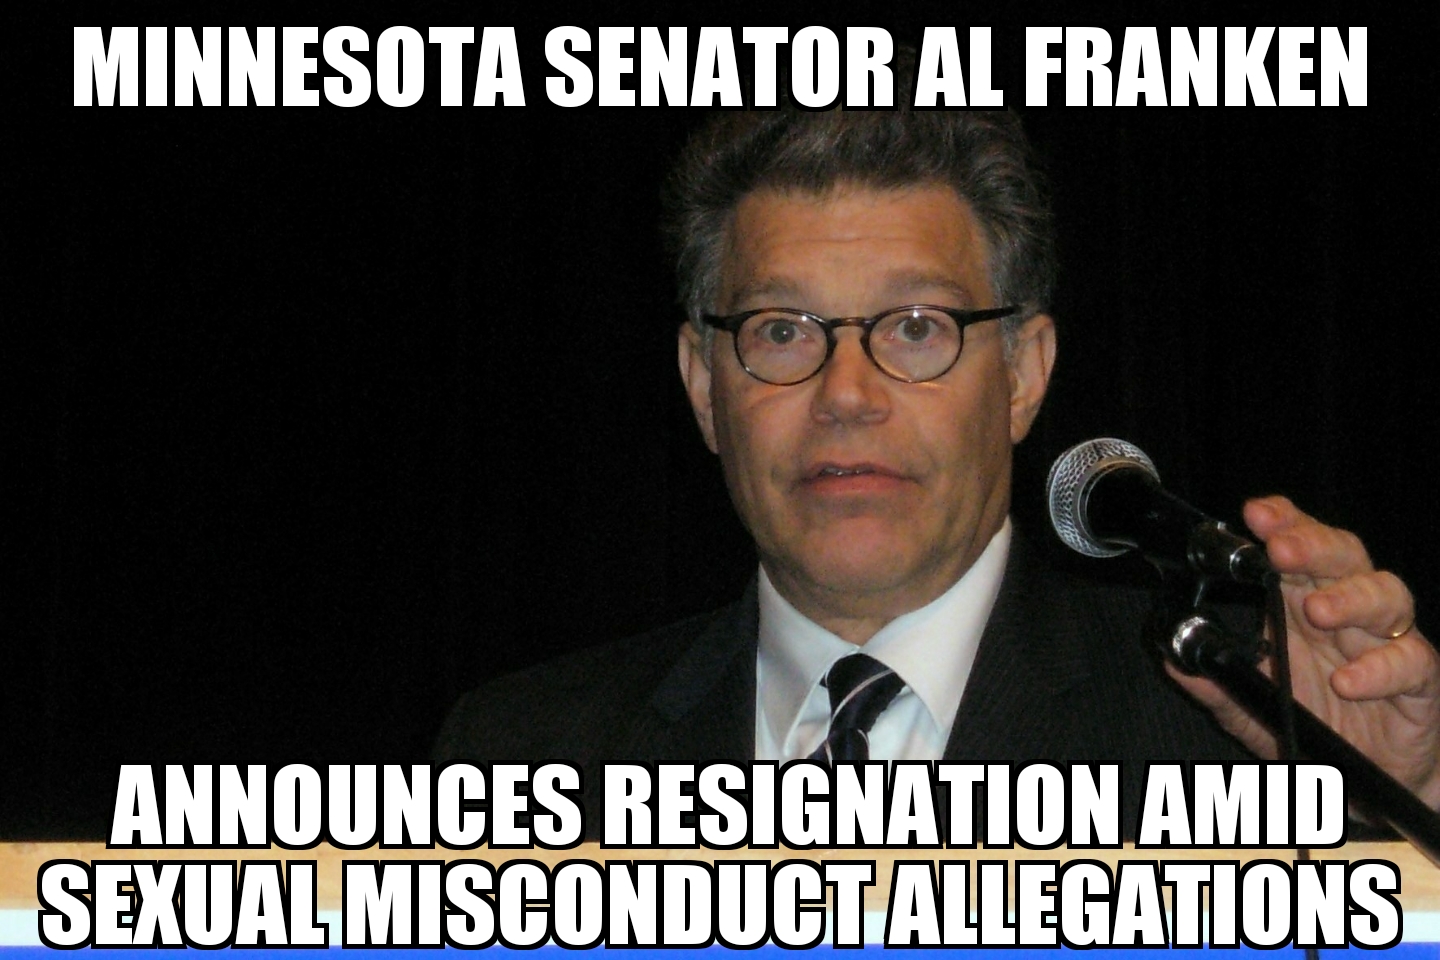 Al Franken announces resignation